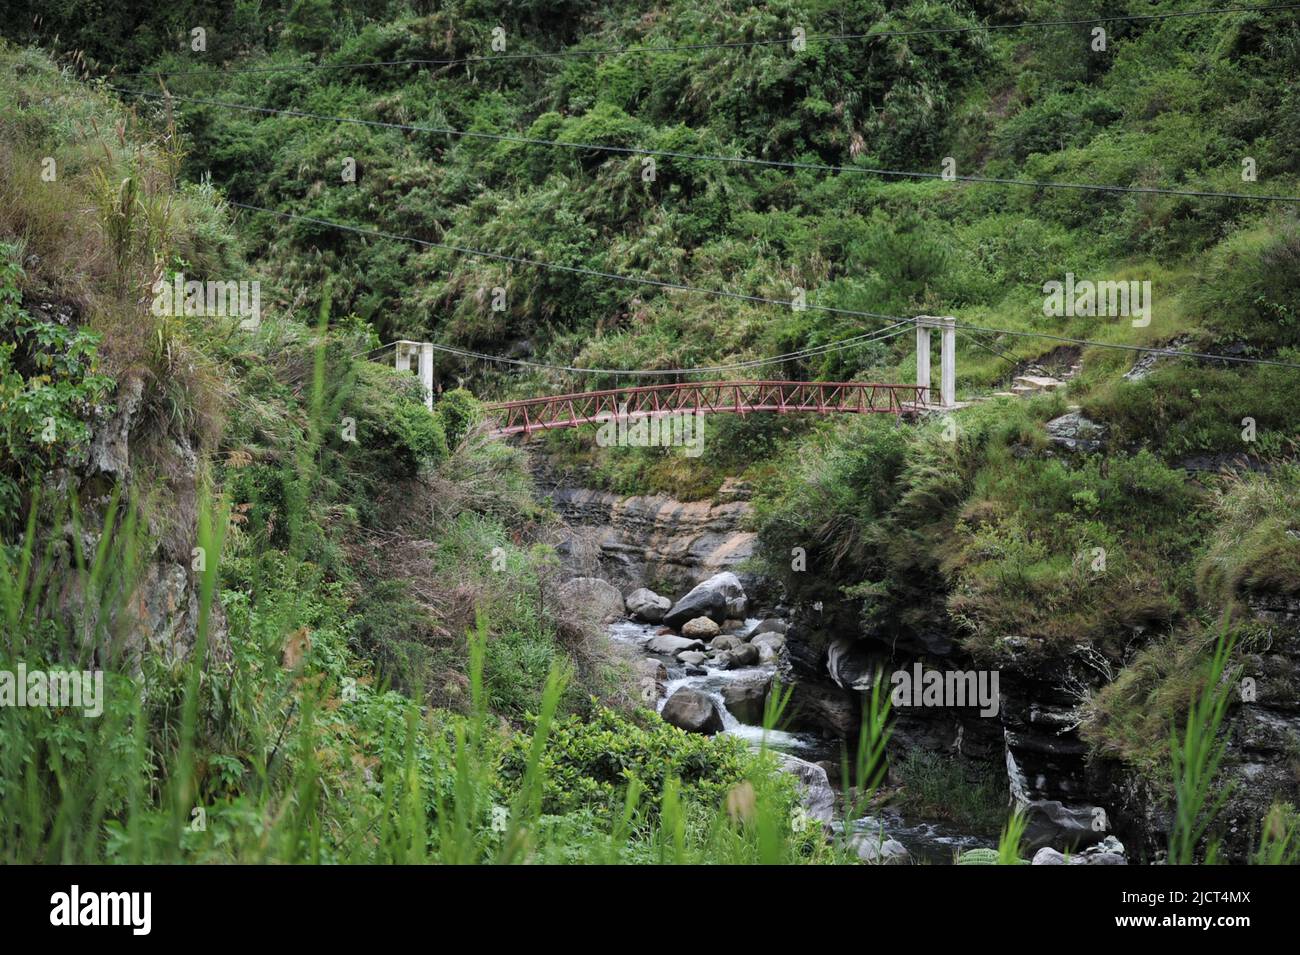 Province de montagne, Philippines : pont métallique étroit au-dessus d'un ruisseau rocheux sur le chemin des chutes Bomod-ok. Banque D'Images